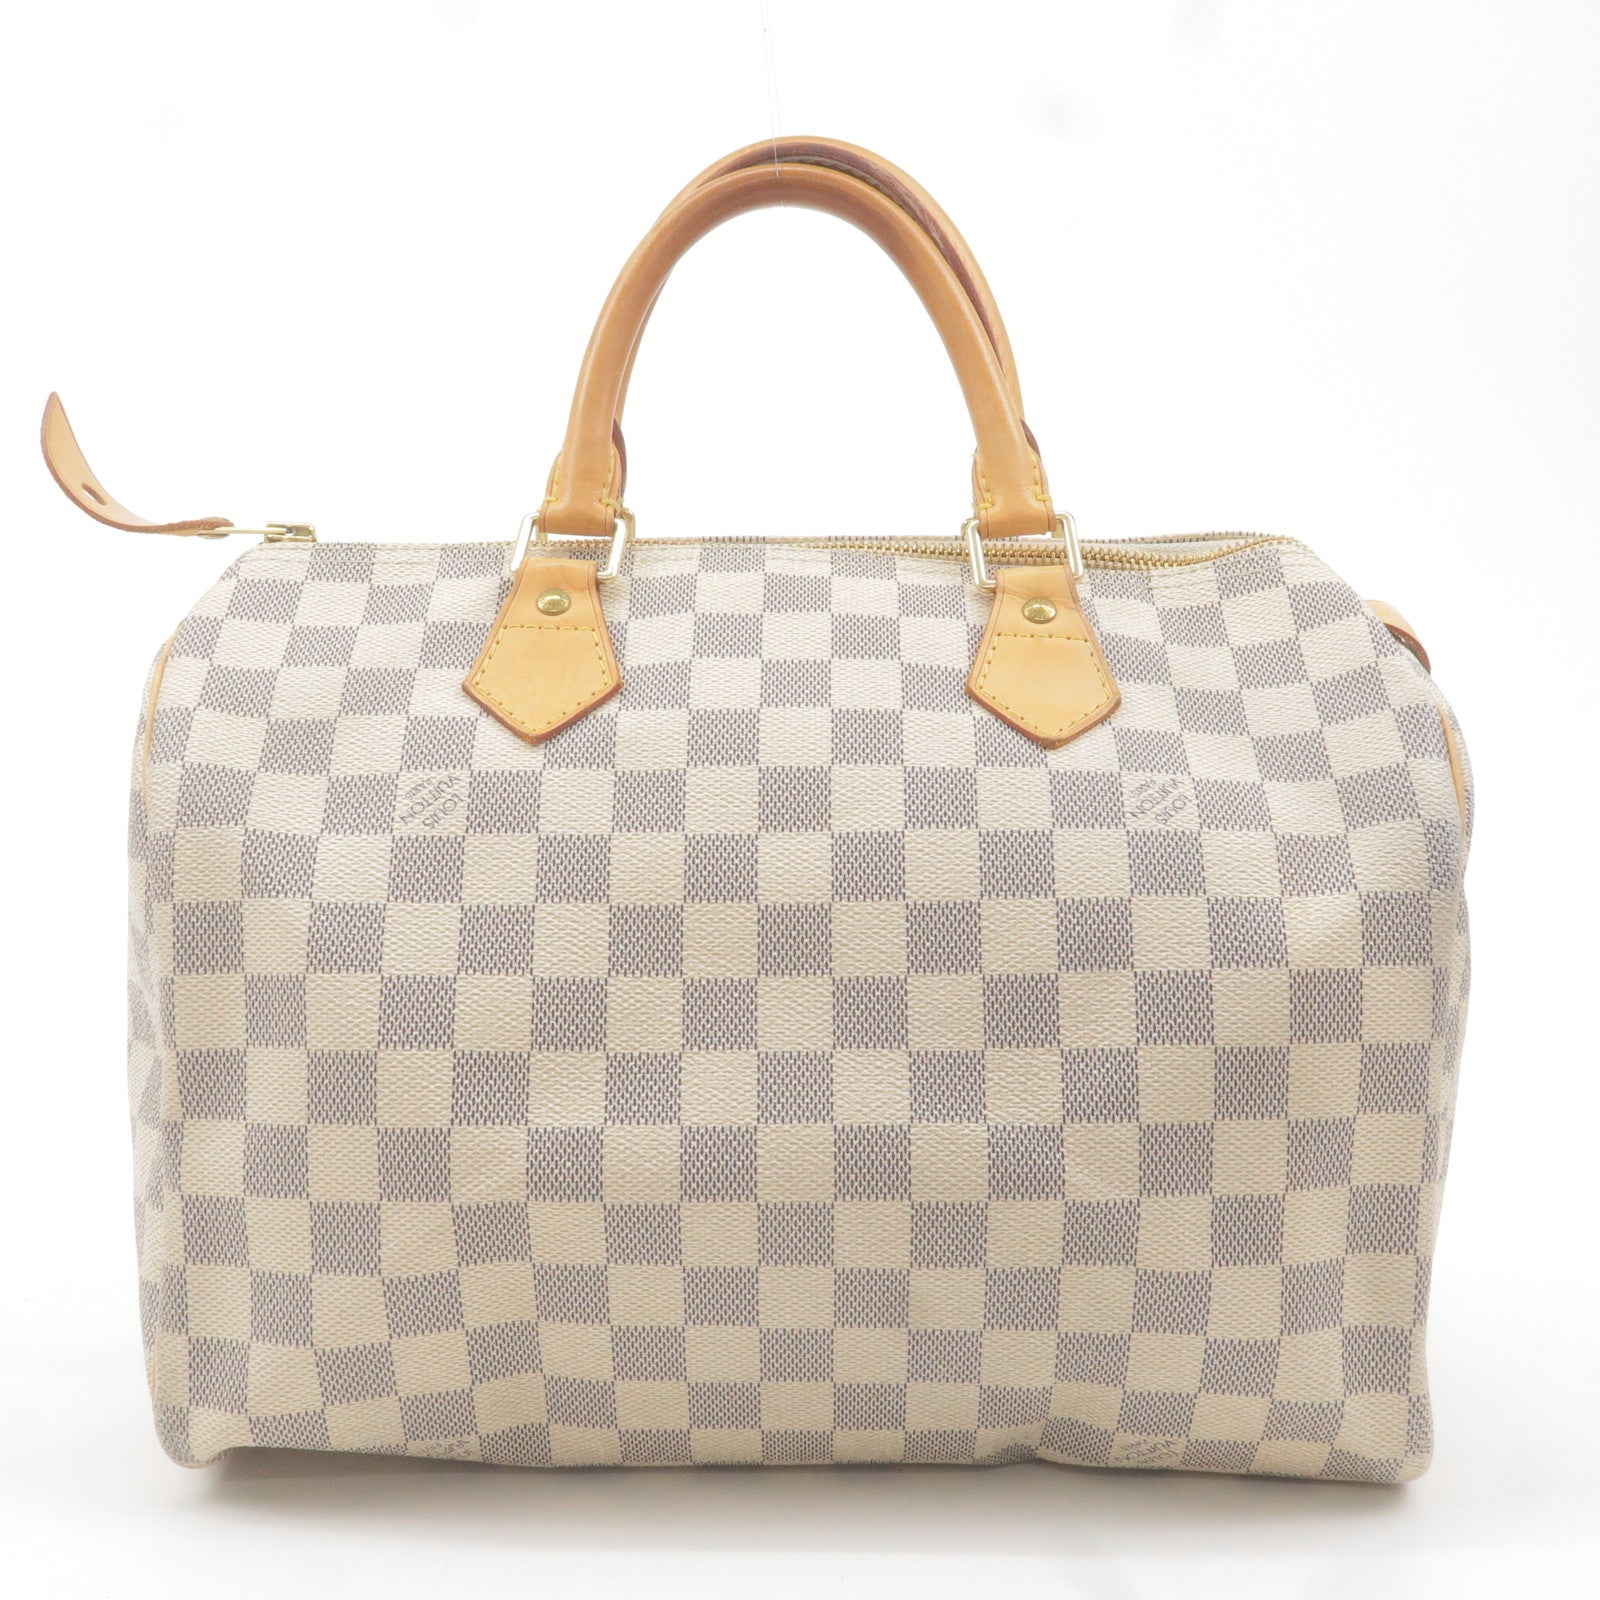 White Louis Vuitton Damier Azur Speedy Bandouliere 30 Boston Bag